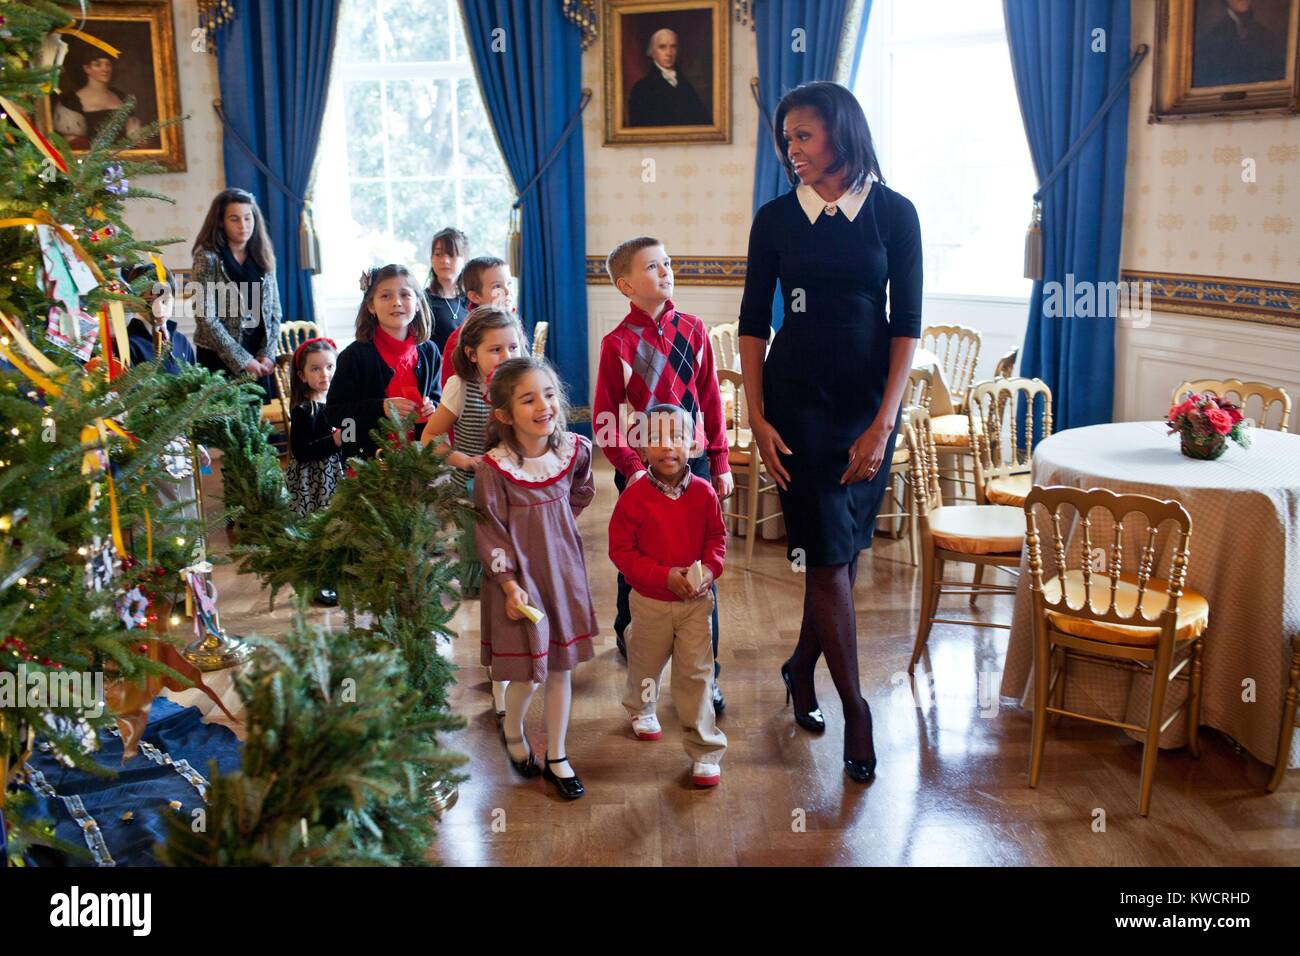 First Lady Michelle Obama mit Kindern der Soldaten und deren Angehörige durch das Weiße Haus Weihnachtsbaum. 30. November 2011. (BSLOC 2015 3 33) Stockfoto